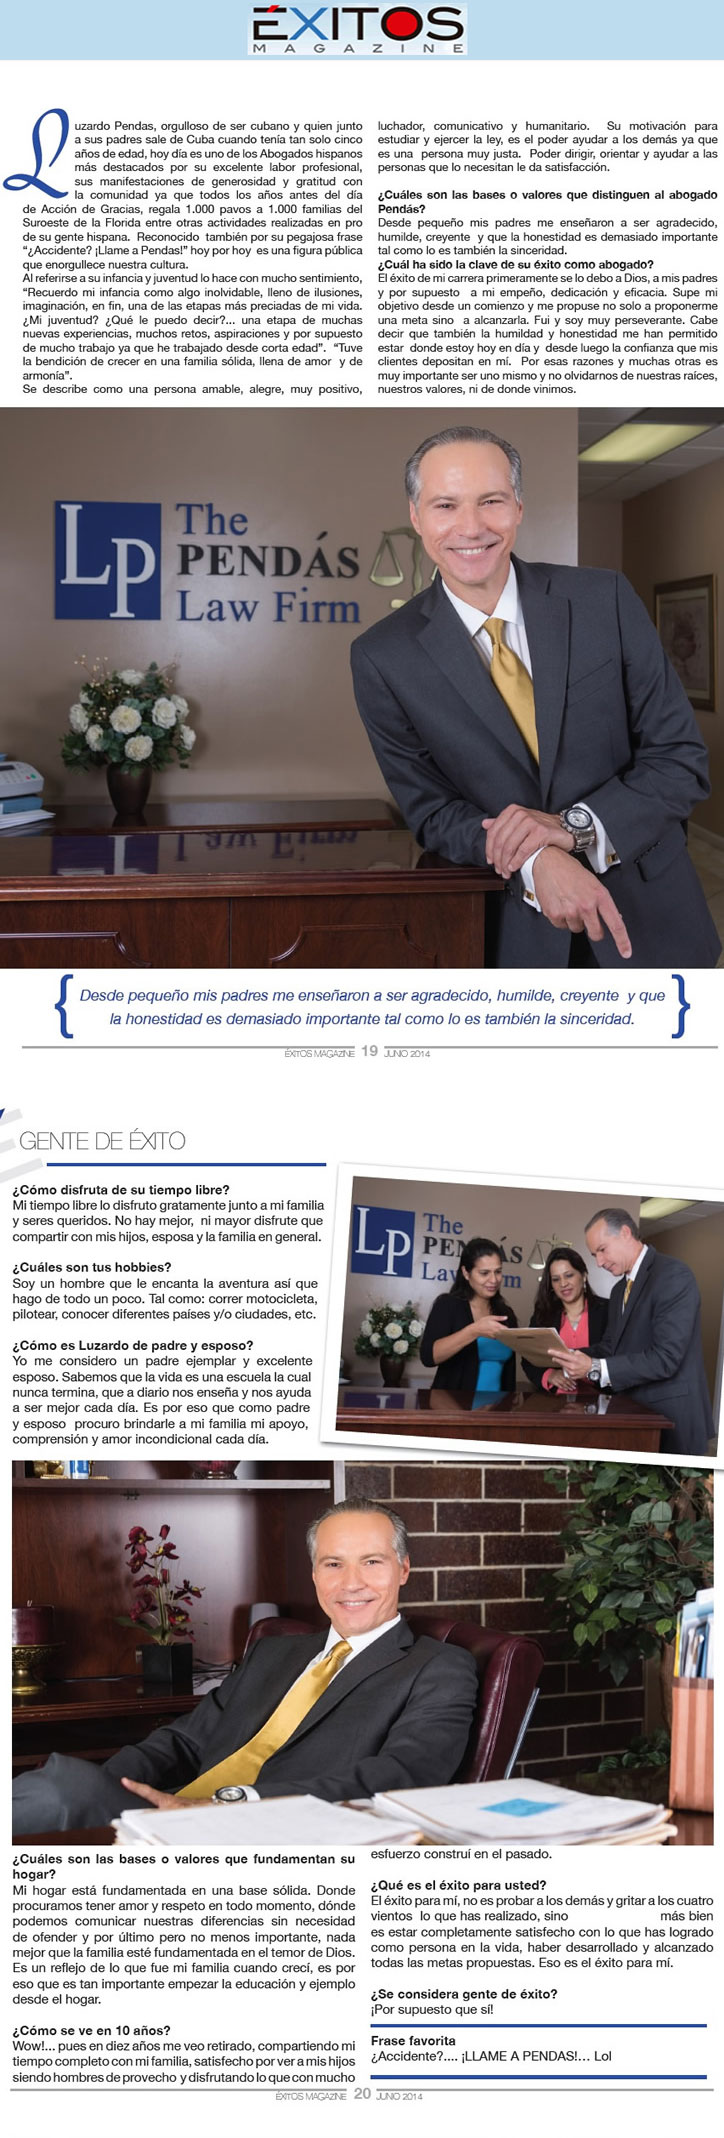 Exitos Magazine — June 2014